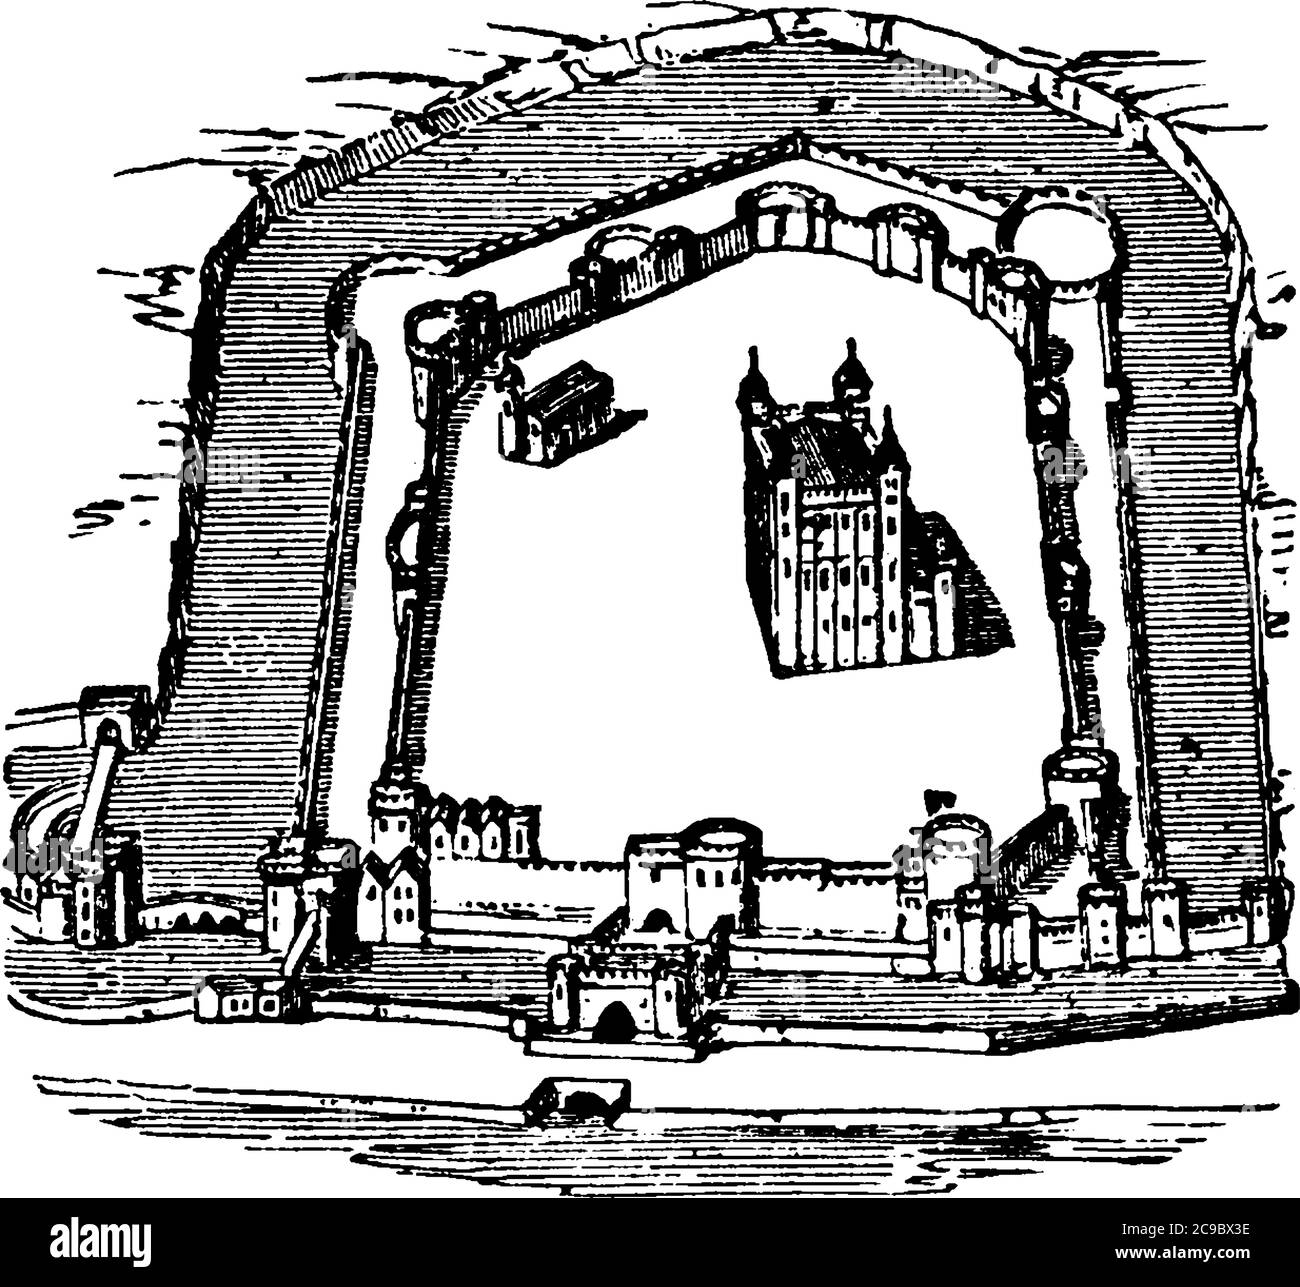 Spettacoli schematici Torre di Londra, è un castello storico situato sulla riva nord del Tamigi nel centro di Londra, disegno di linee d'epoca o incisioni Illustrazione Vettoriale